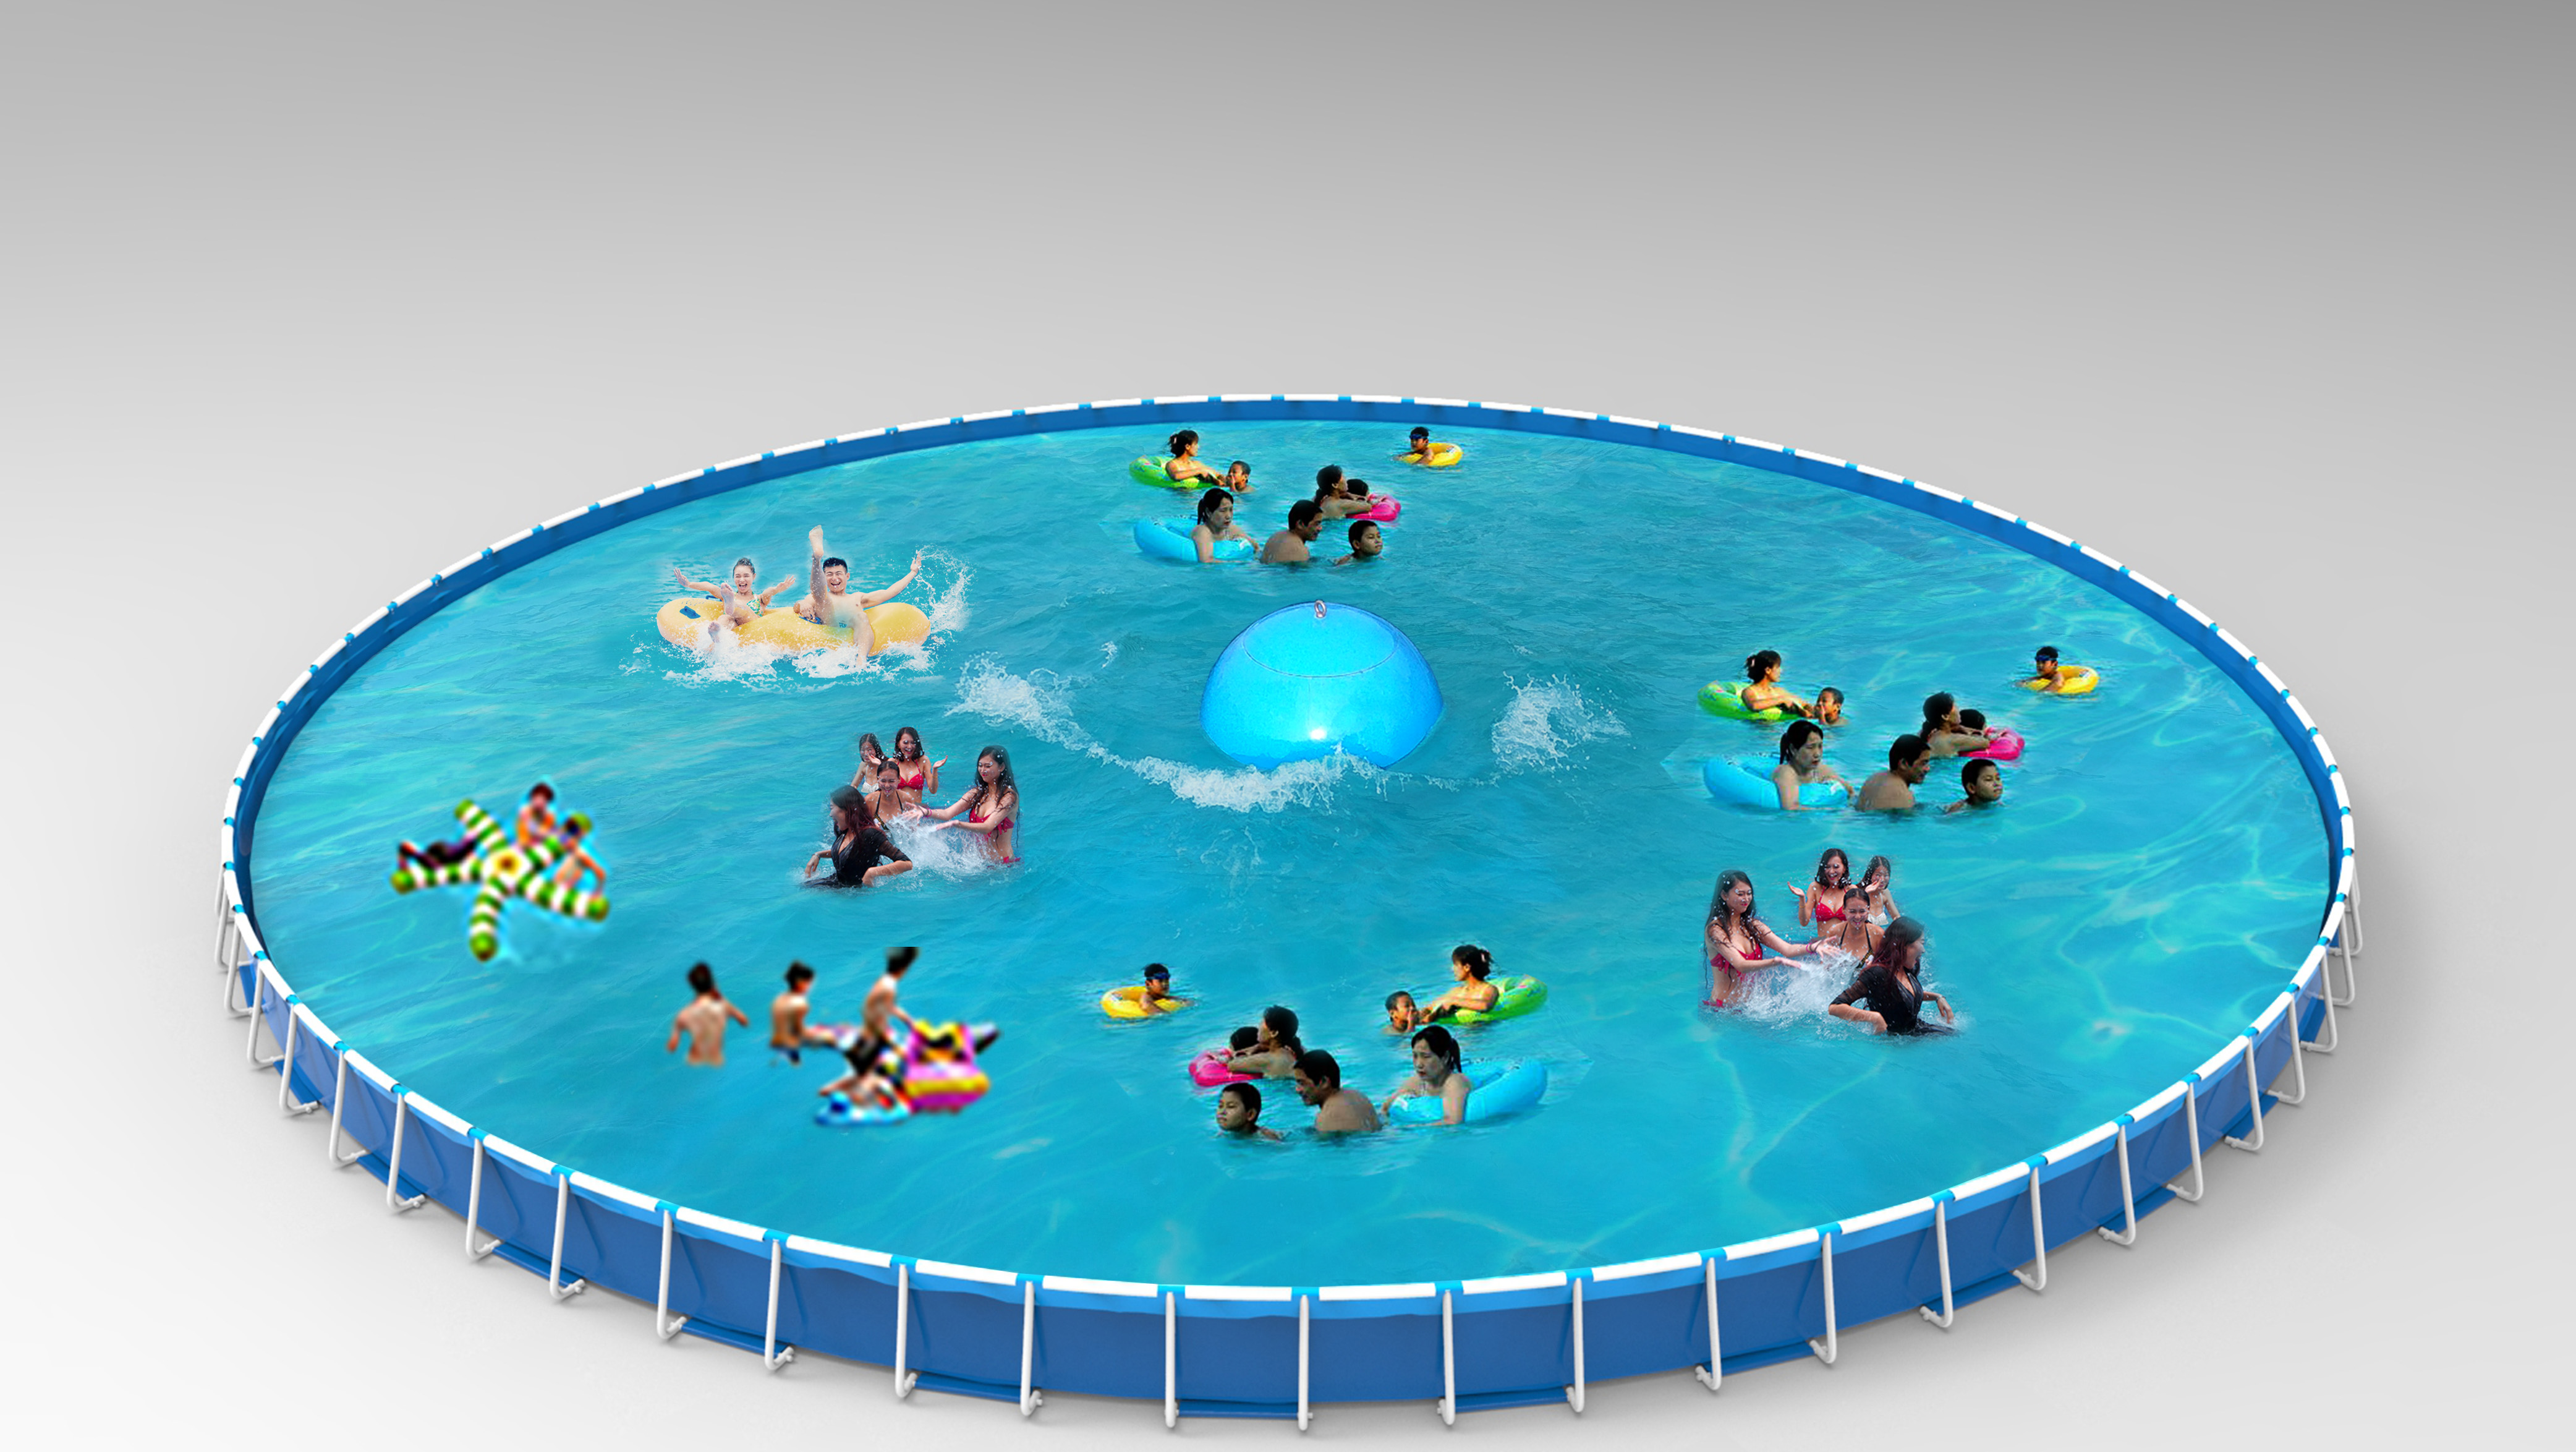 移动水上乐园项目大人和小孩都可以玩吗？都包含哪些项目？